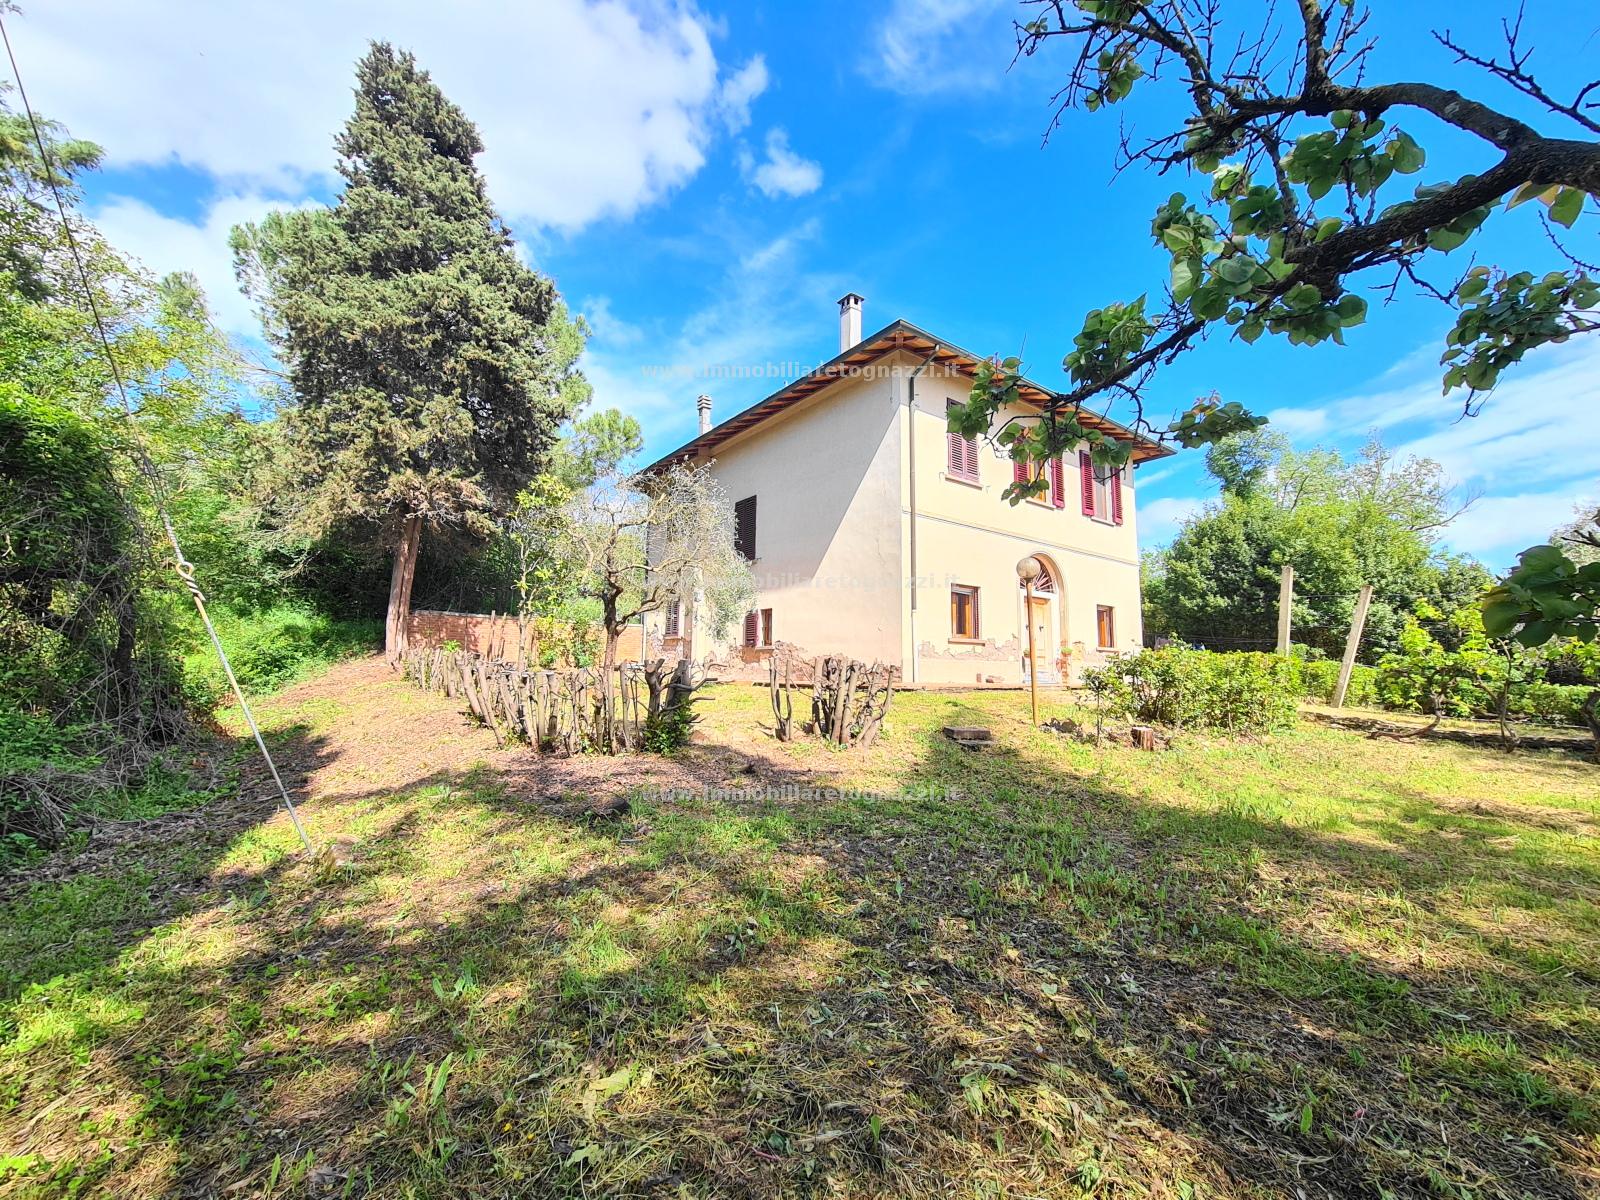 Villa in vendita a Castelfiorentino, 8 locali, prezzo € 280.000 | PortaleAgenzieImmobiliari.it